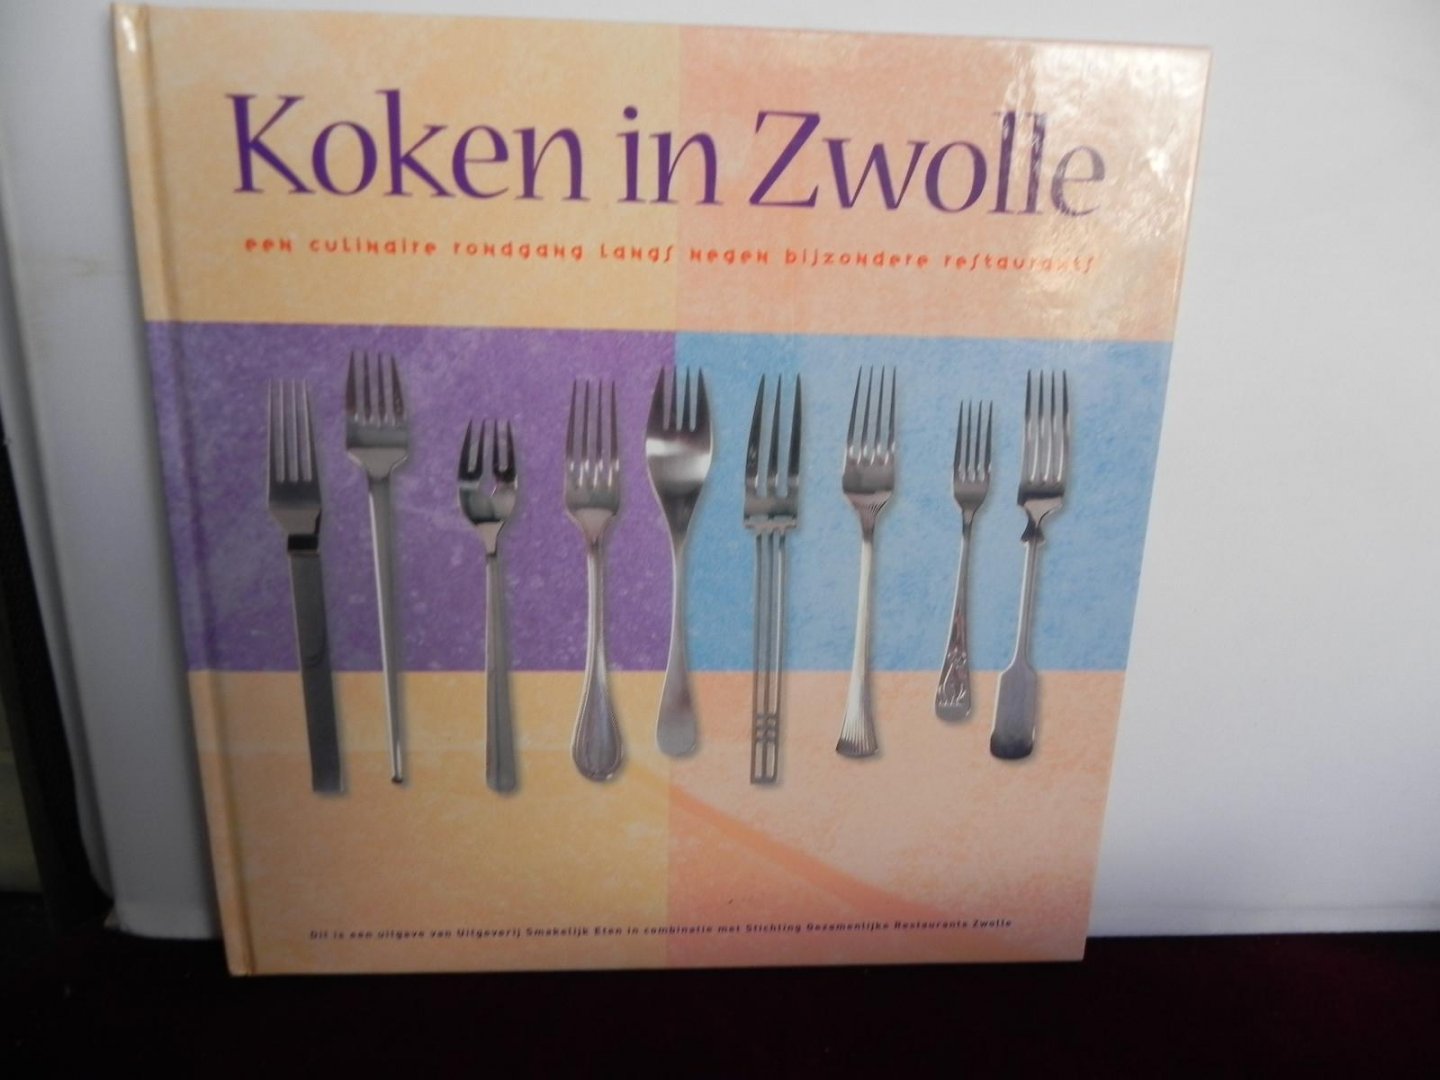  - Koken in Zwolle / druk 1